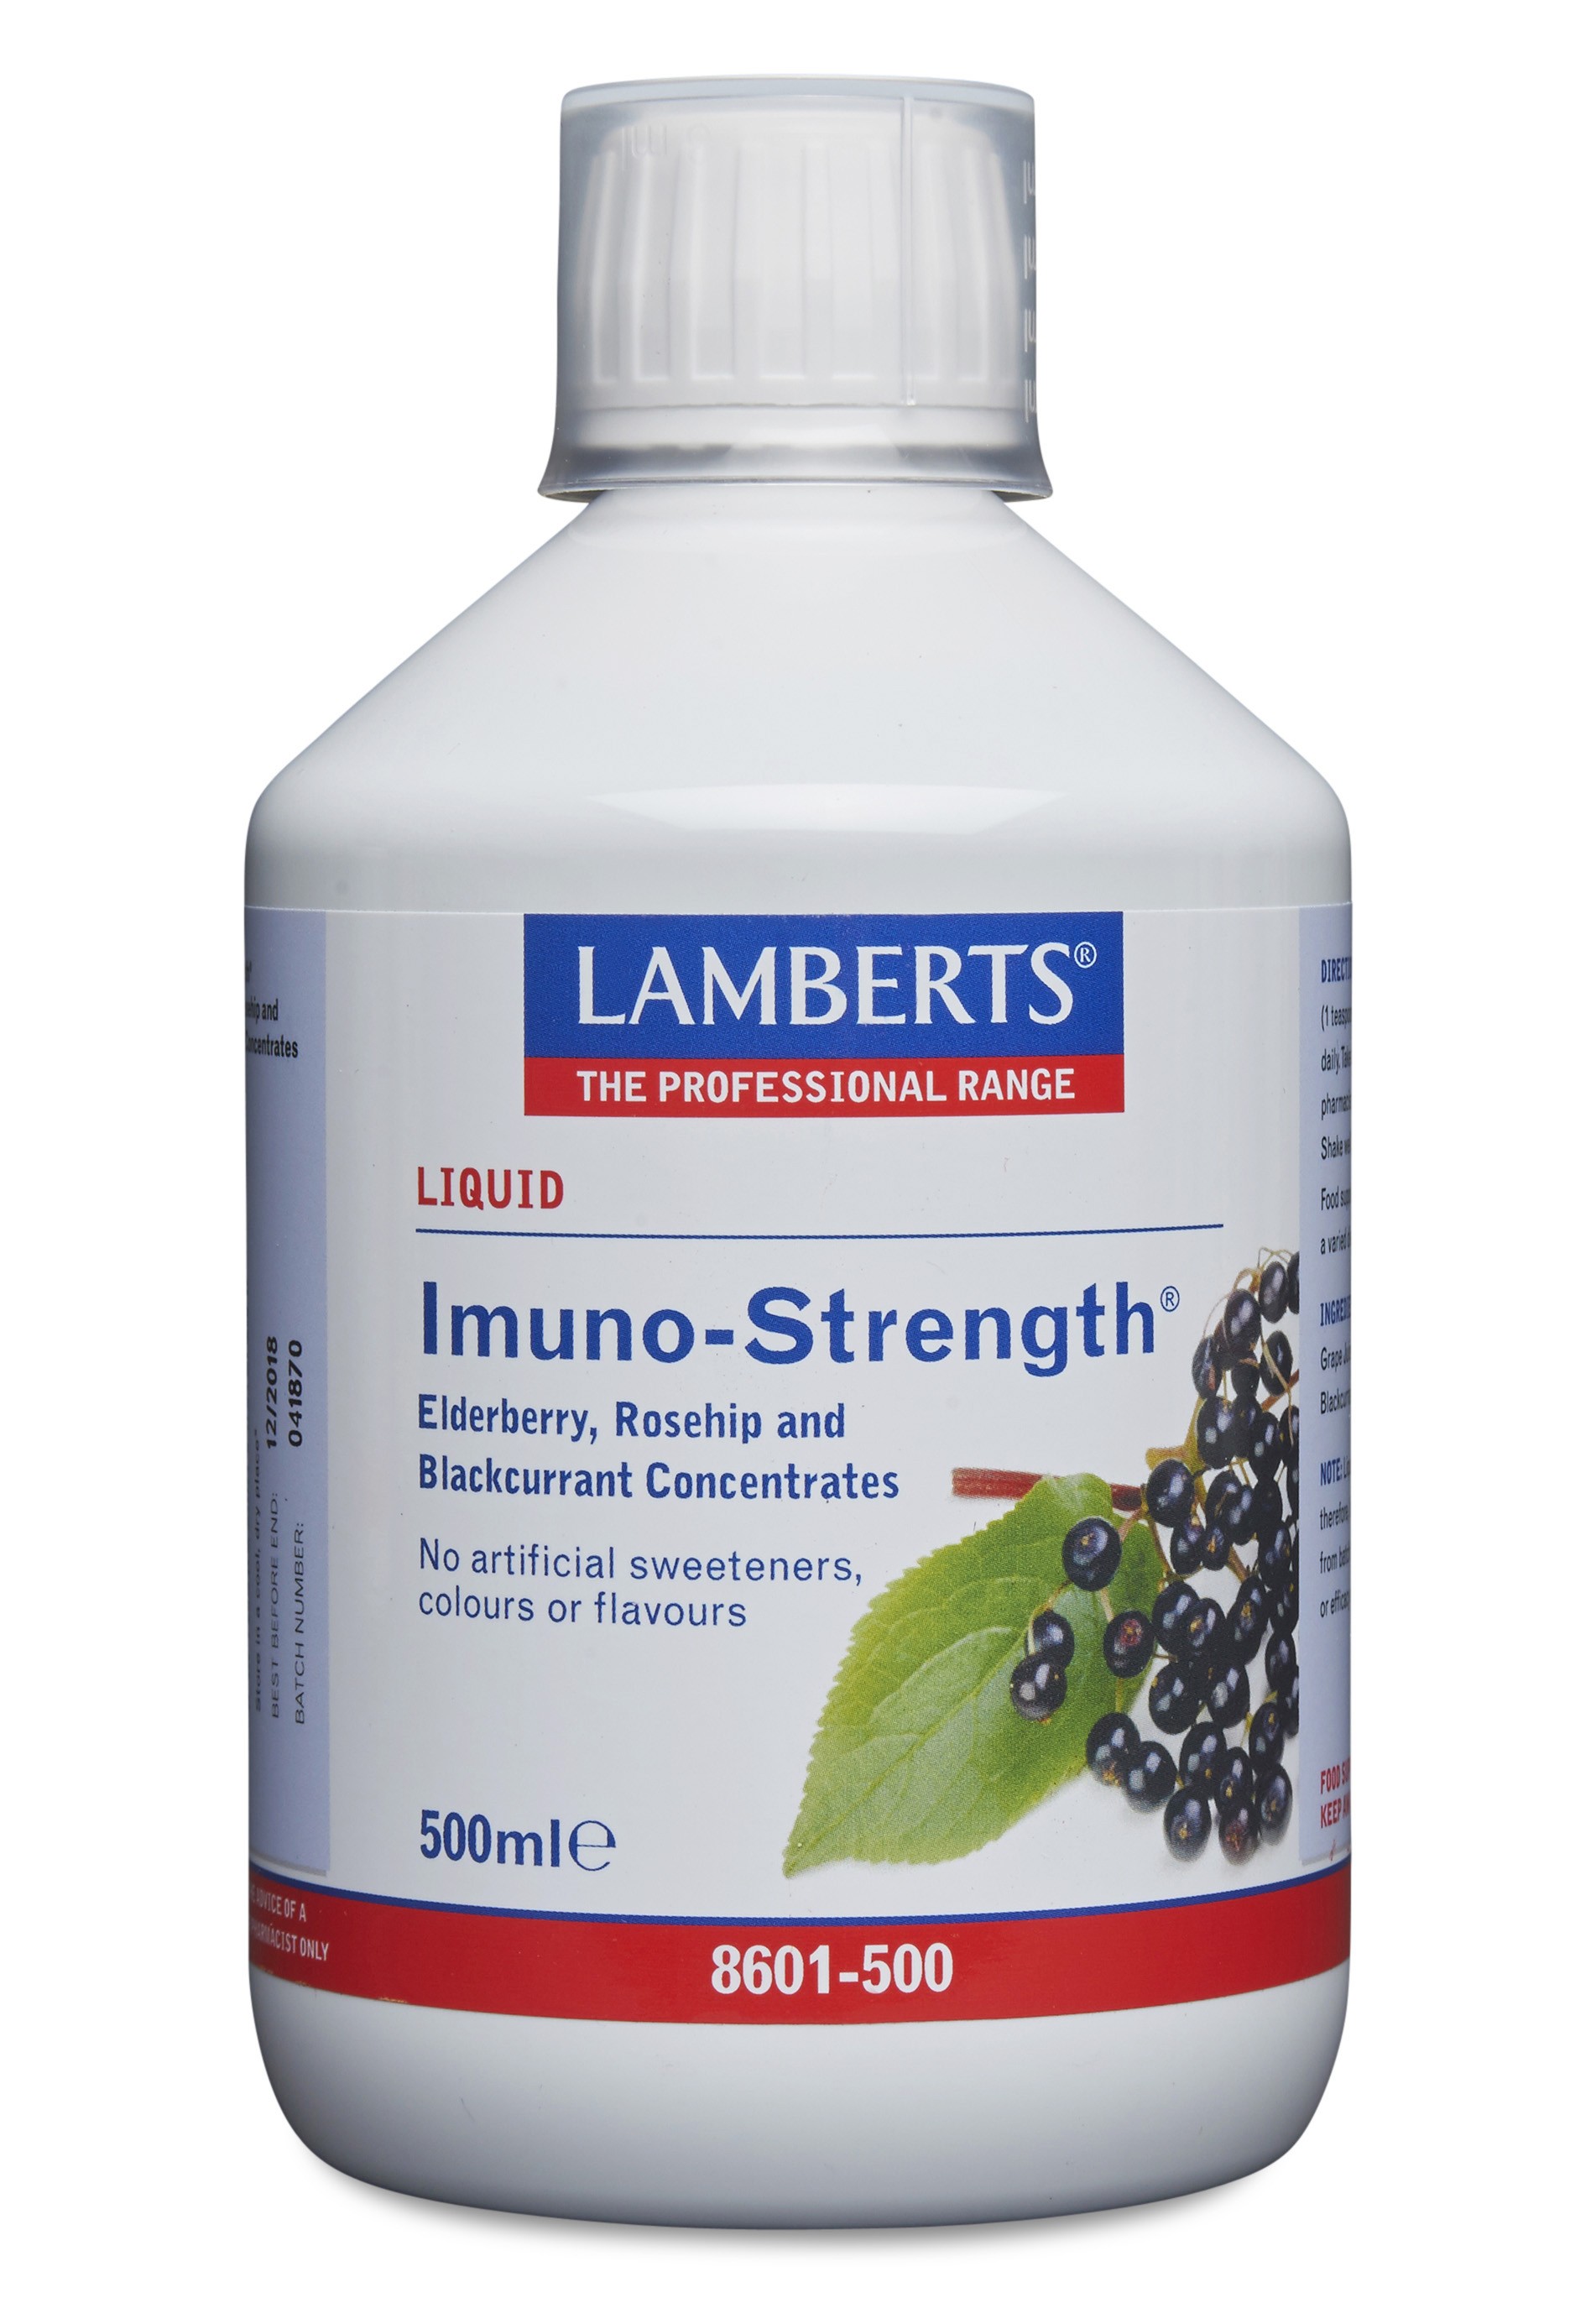 Lamberts Liquid Imuno-Strength